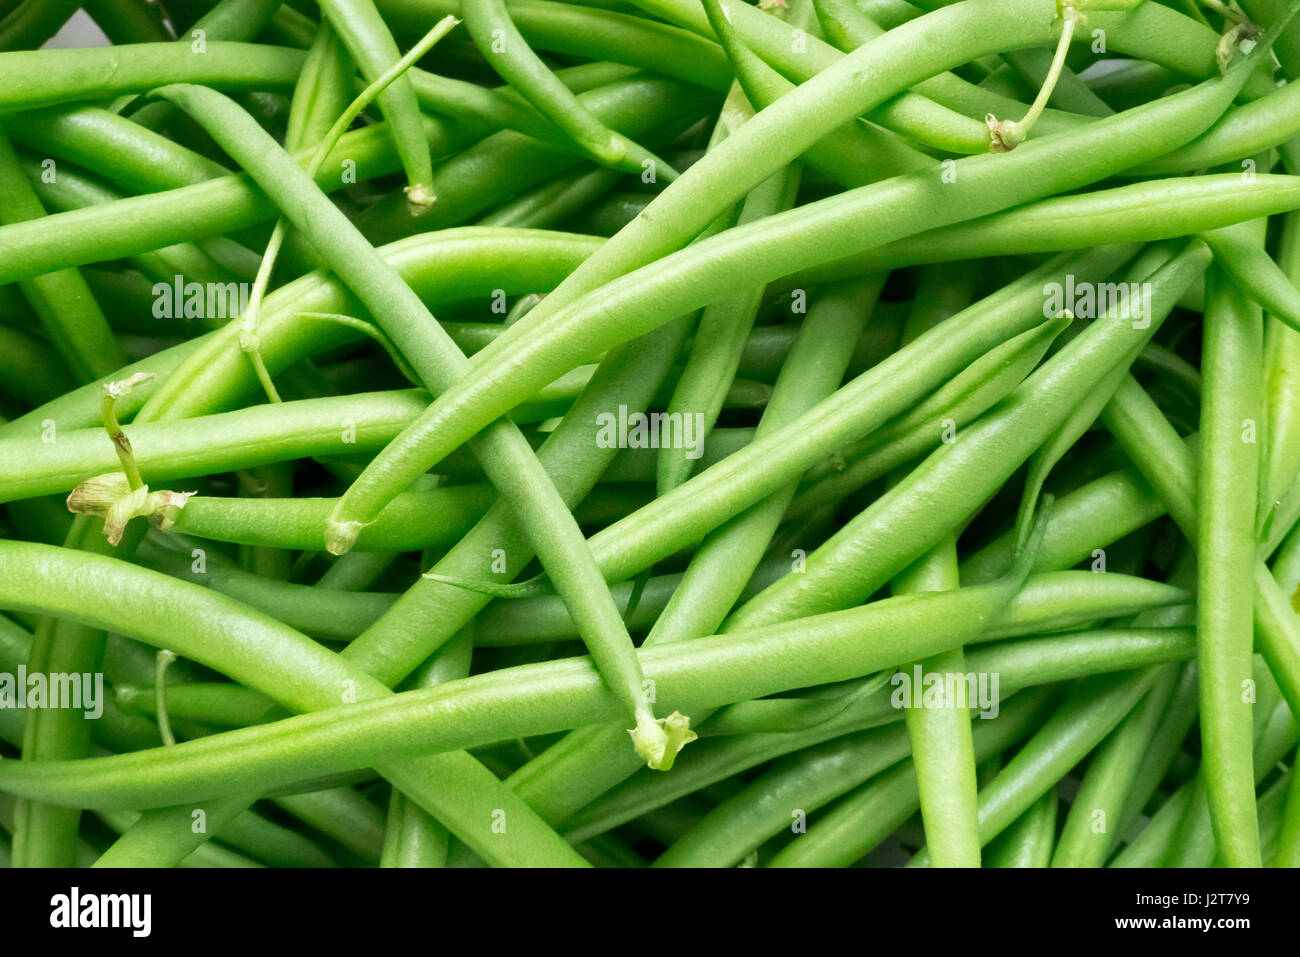 Grenn beans. Stock Photo